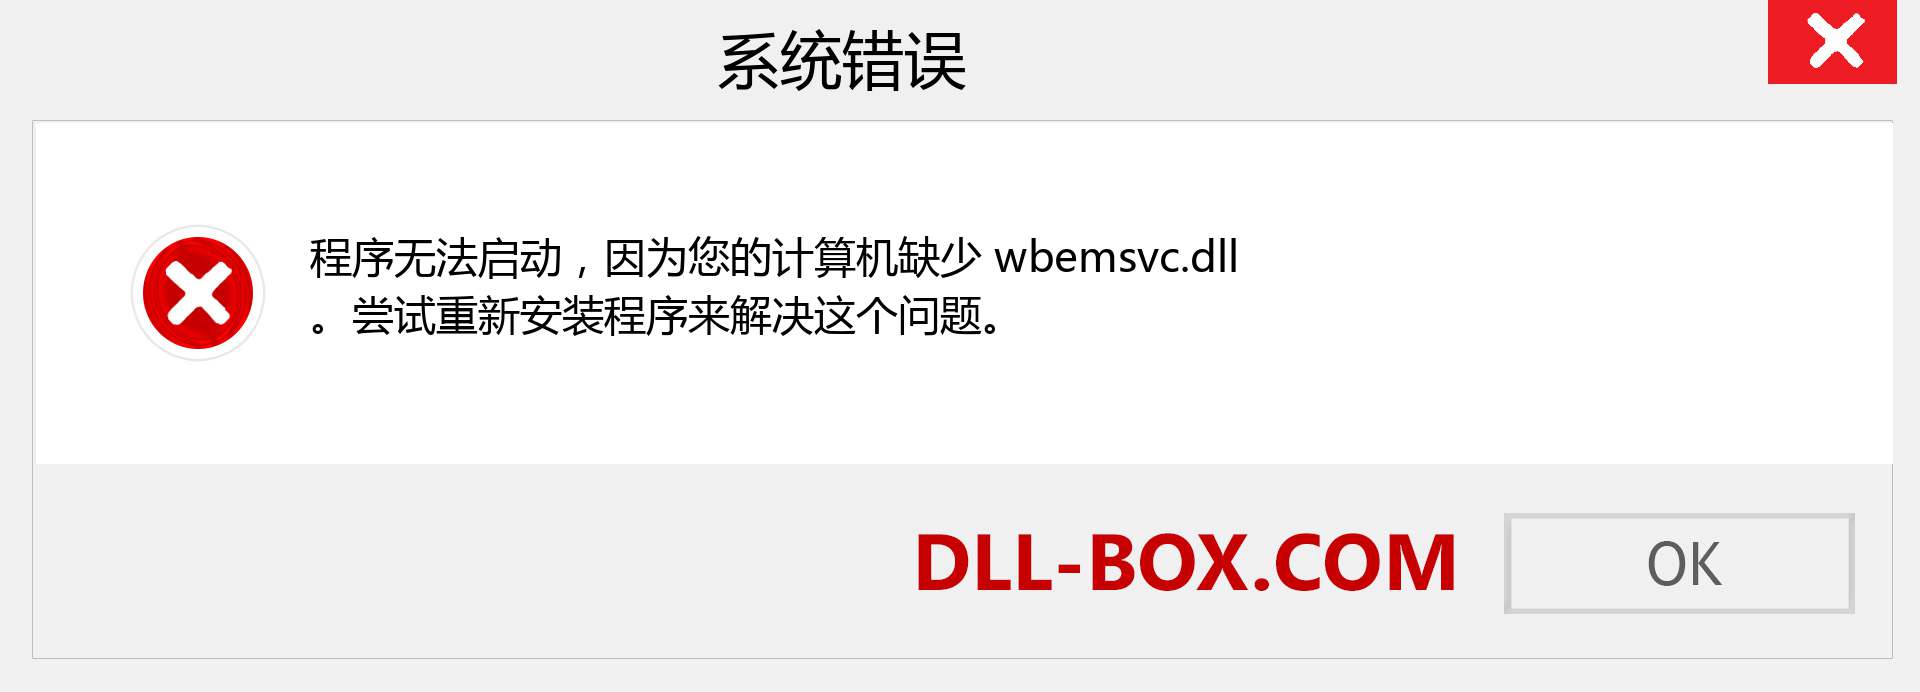 wbemsvc.dll 文件丢失？。 适用于 Windows 7、8、10 的下载 - 修复 Windows、照片、图像上的 wbemsvc dll 丢失错误